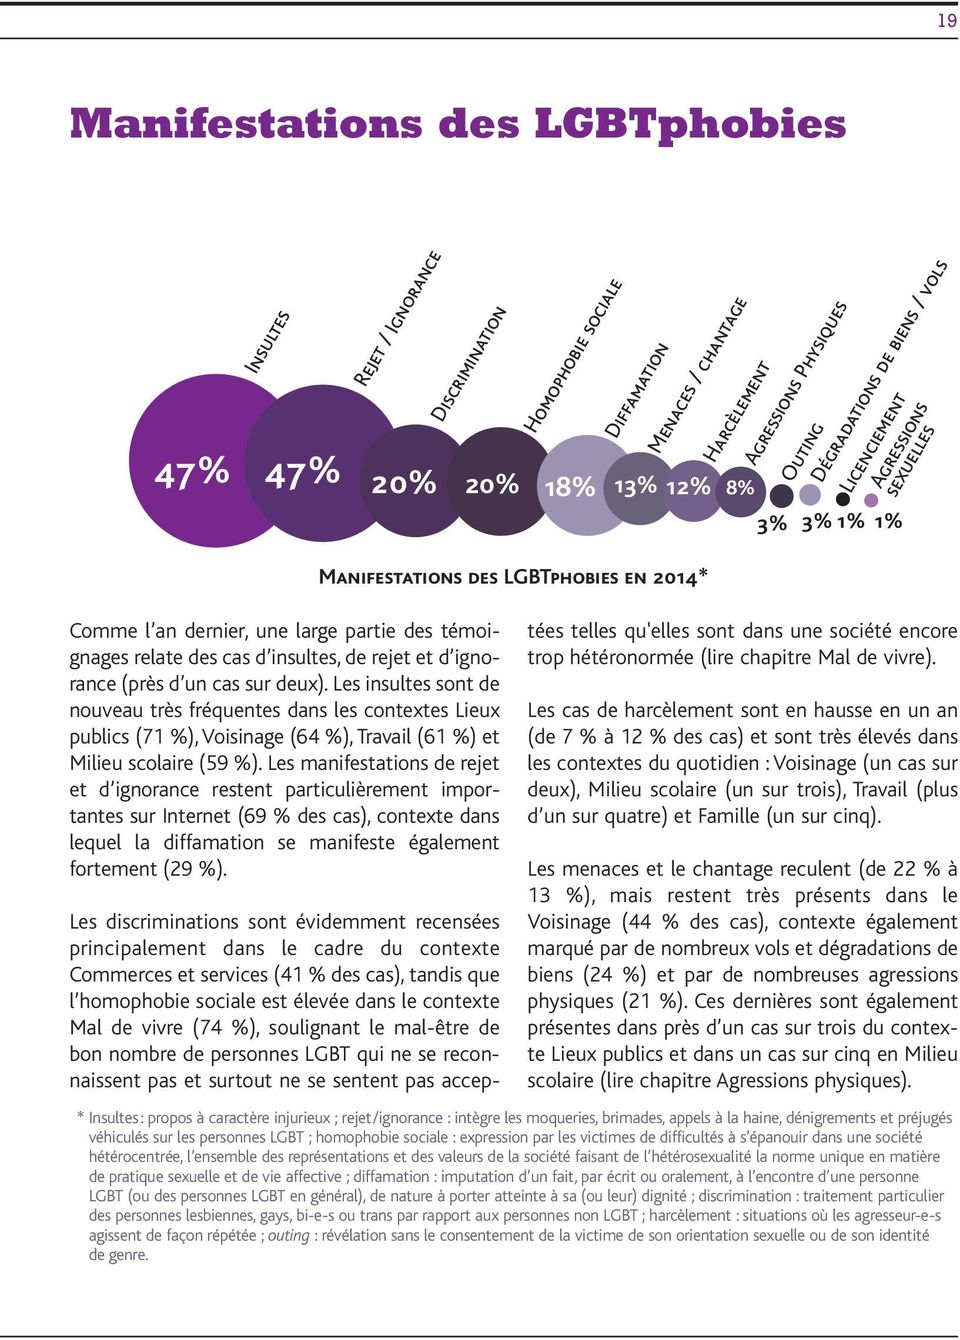 deux). Les insultes sont de nouveau très fréquentes dans les contextes Lieux publics (71 %),Voisinage (64 %), Travail (61 %) et Milieu scolaire (59 %).